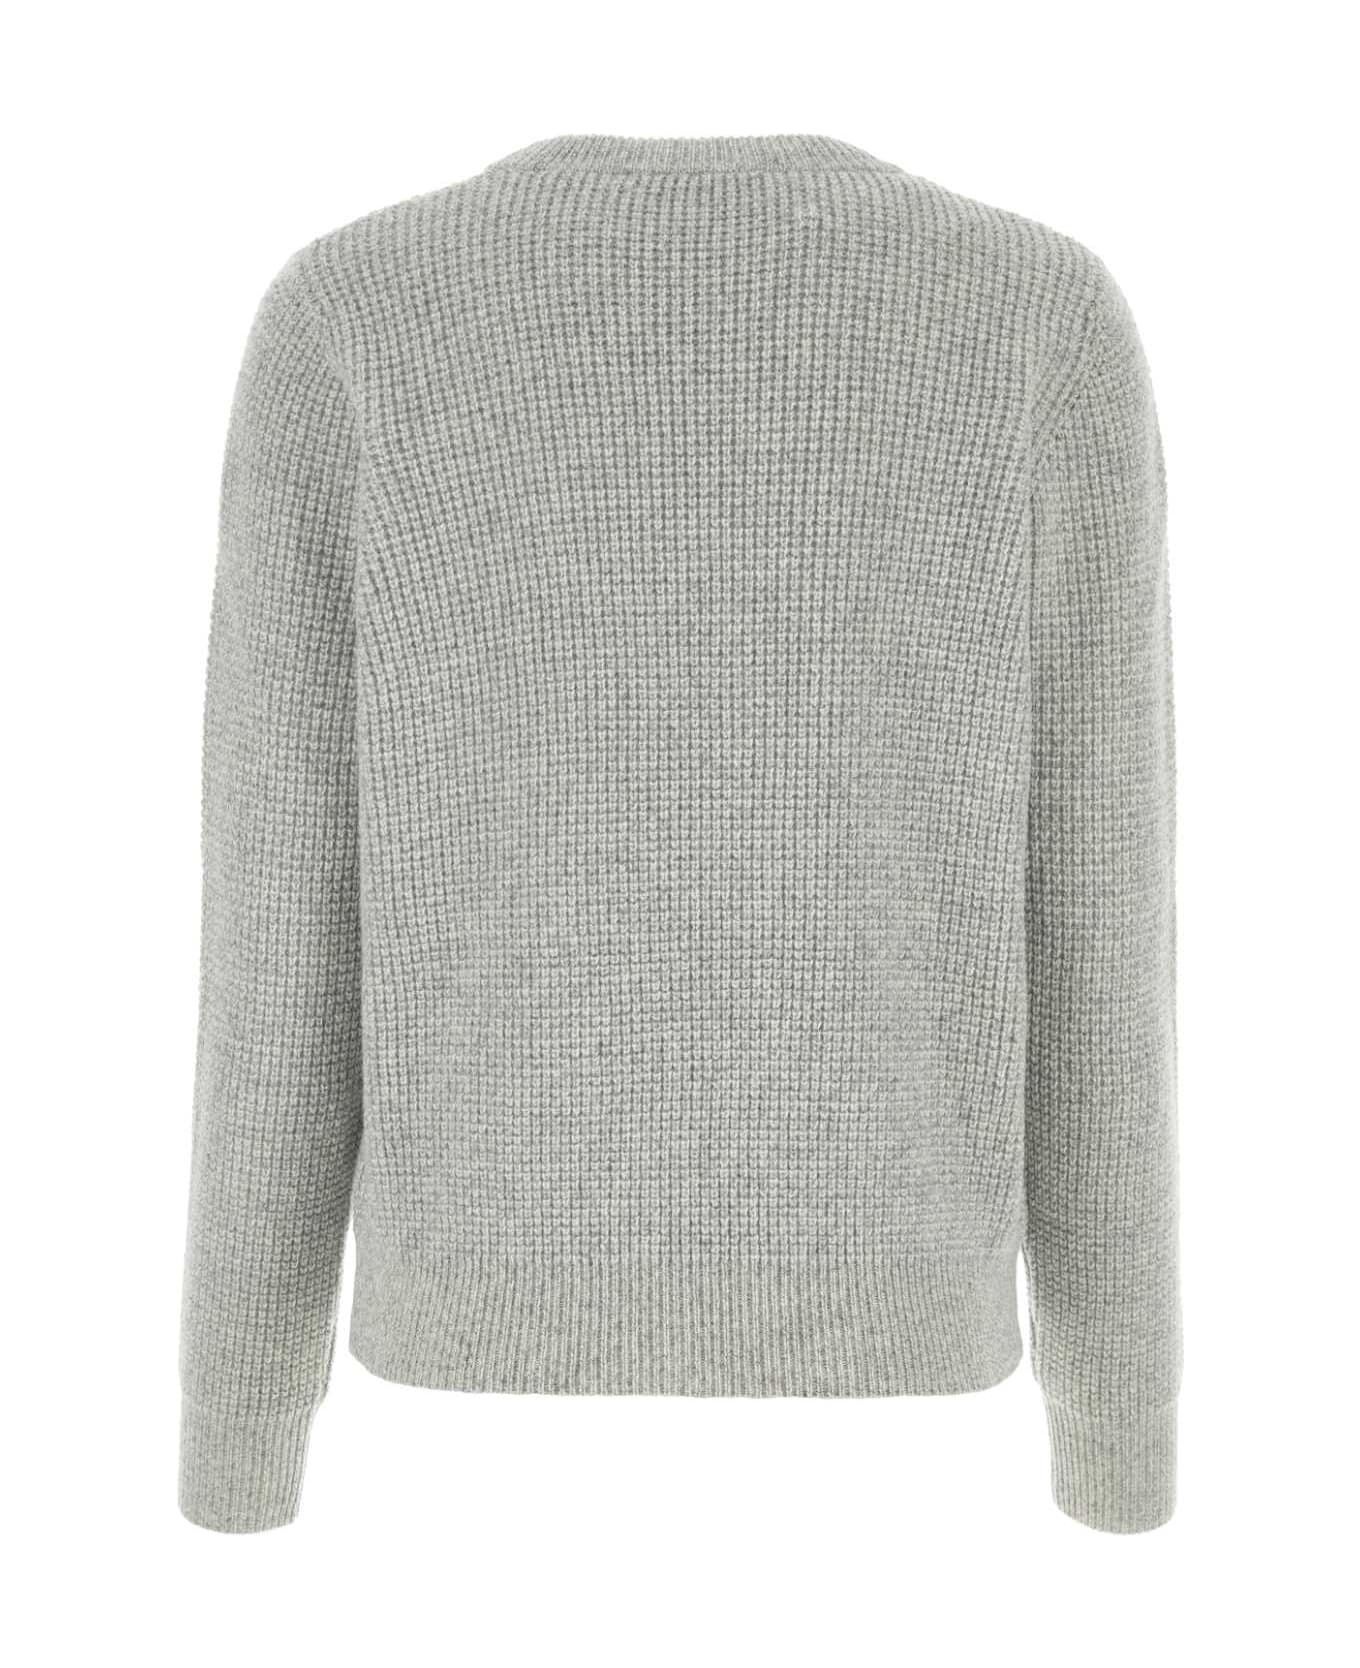 Maison Kitsuné Light Grey Wool Sweater - LIGHT GREY MELANGE フリース